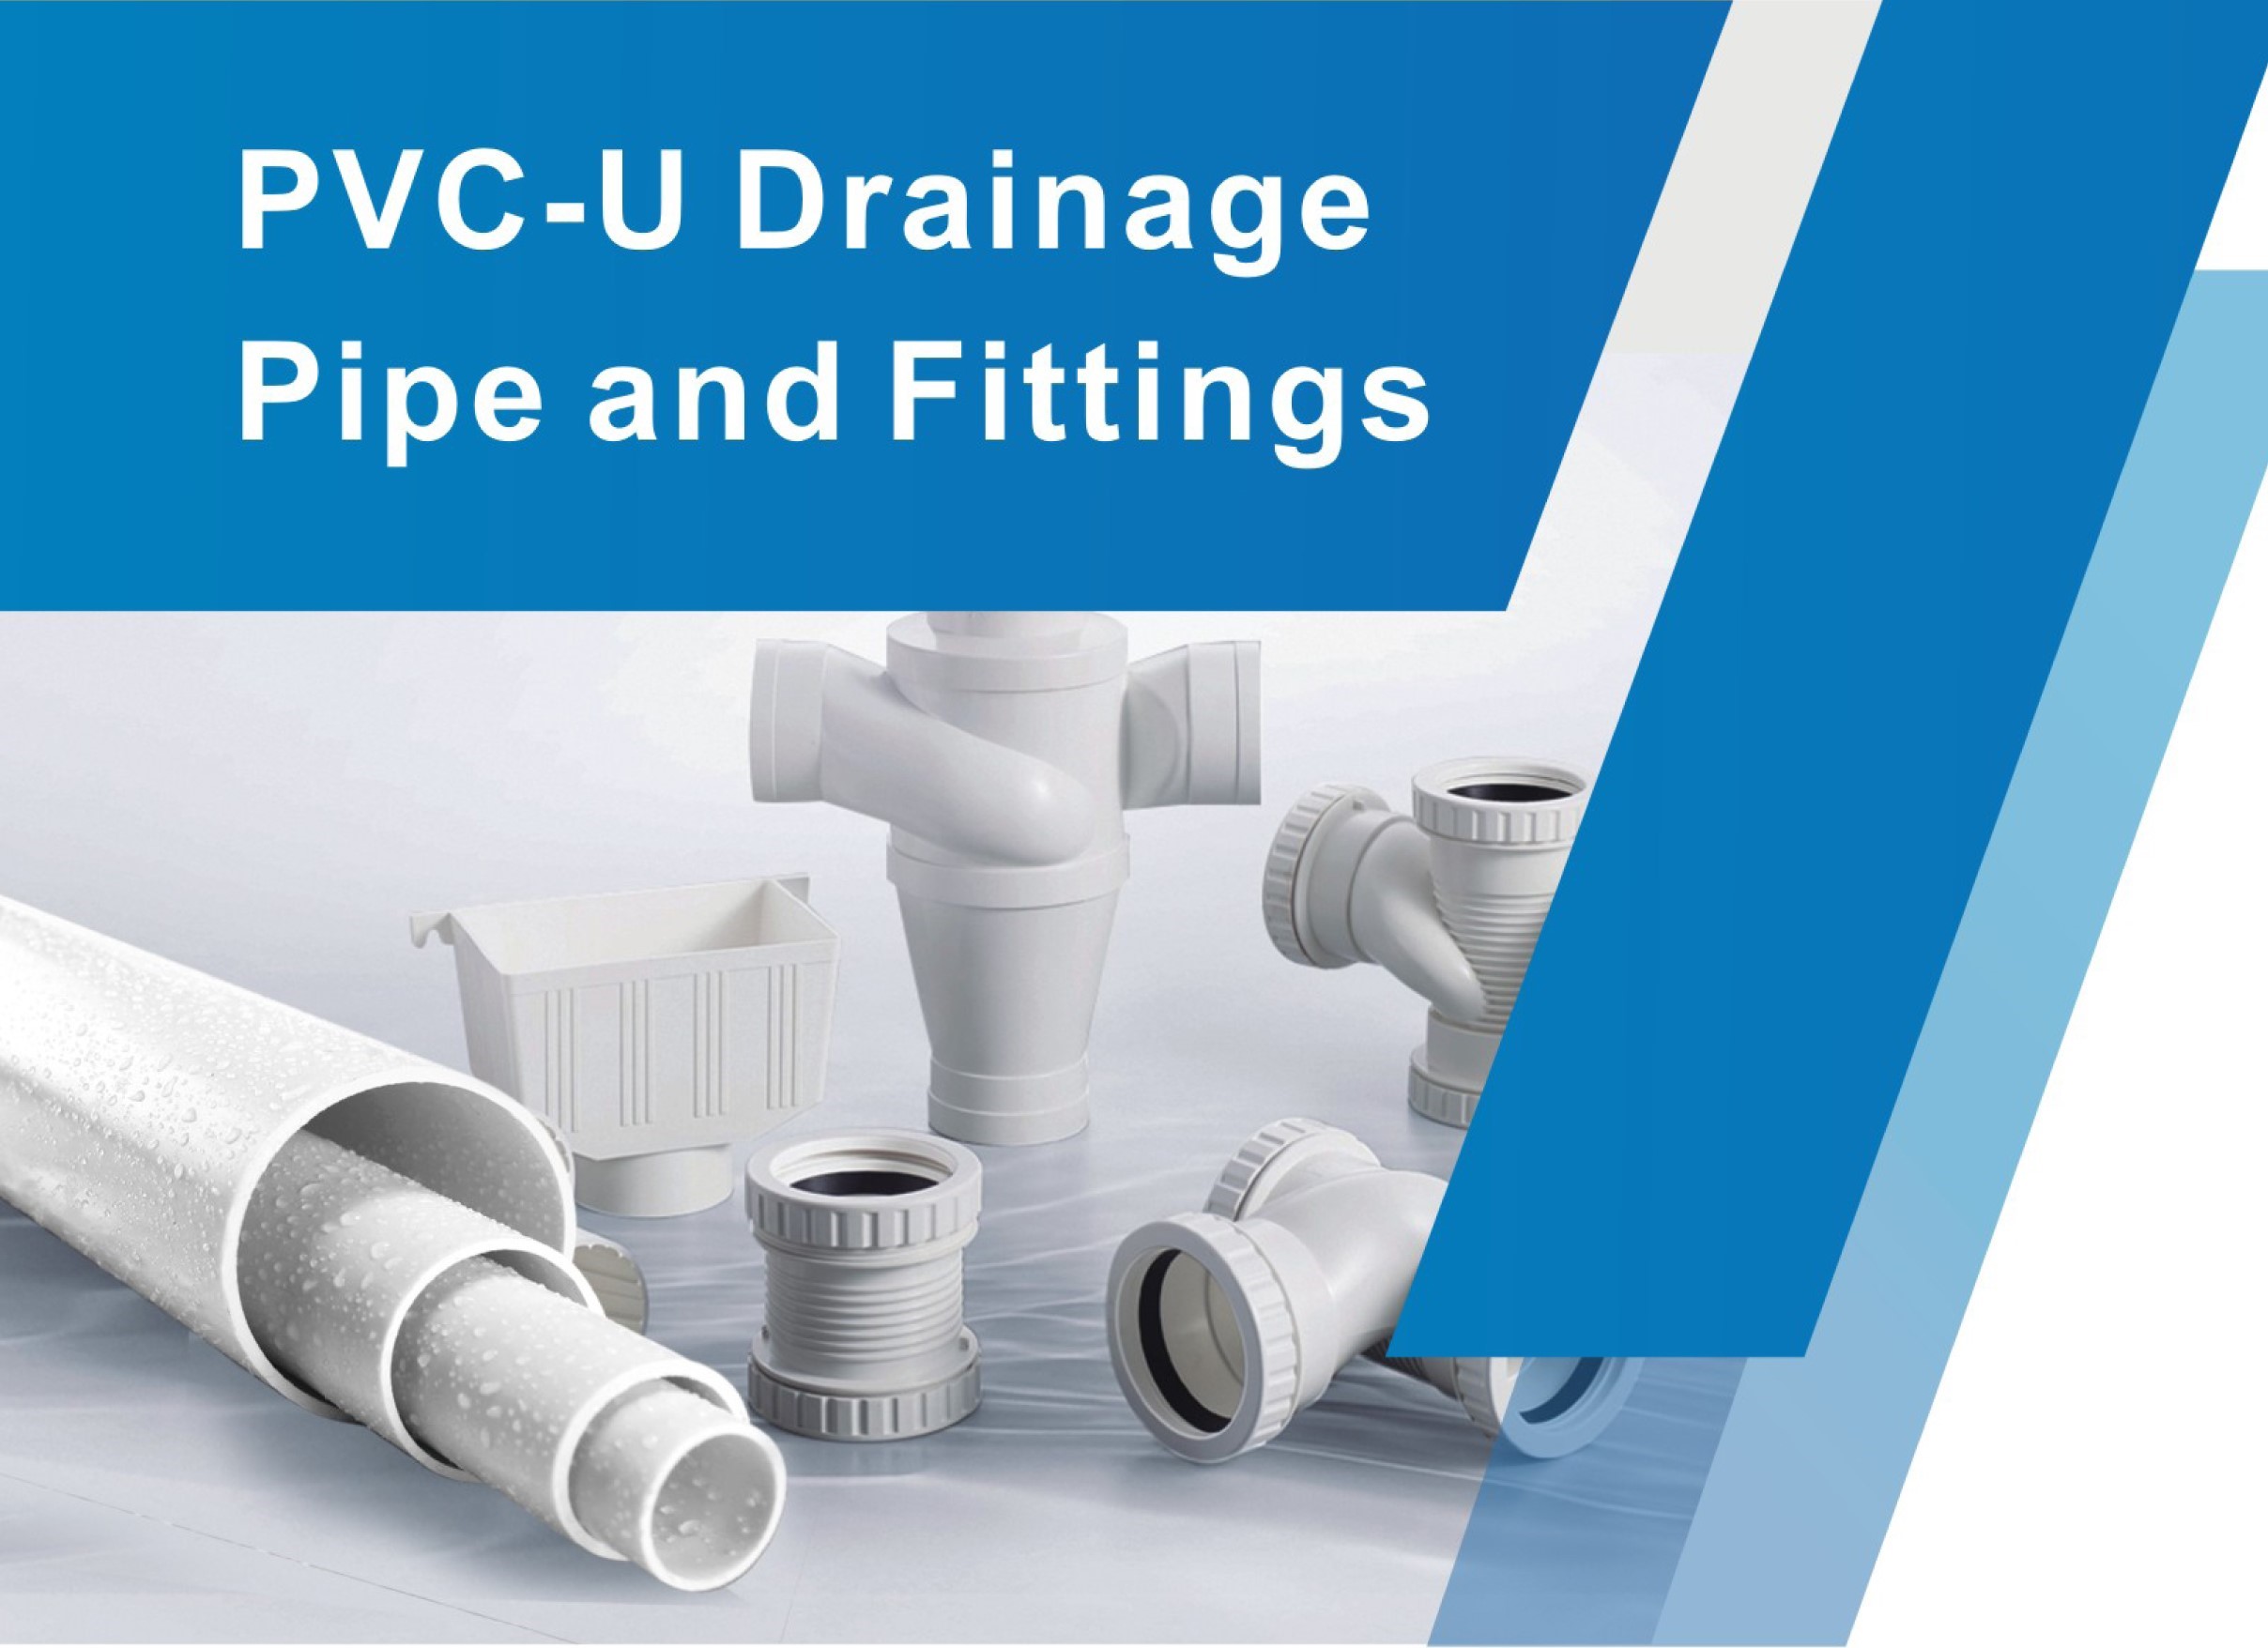 PVC-U Drainage Pipe